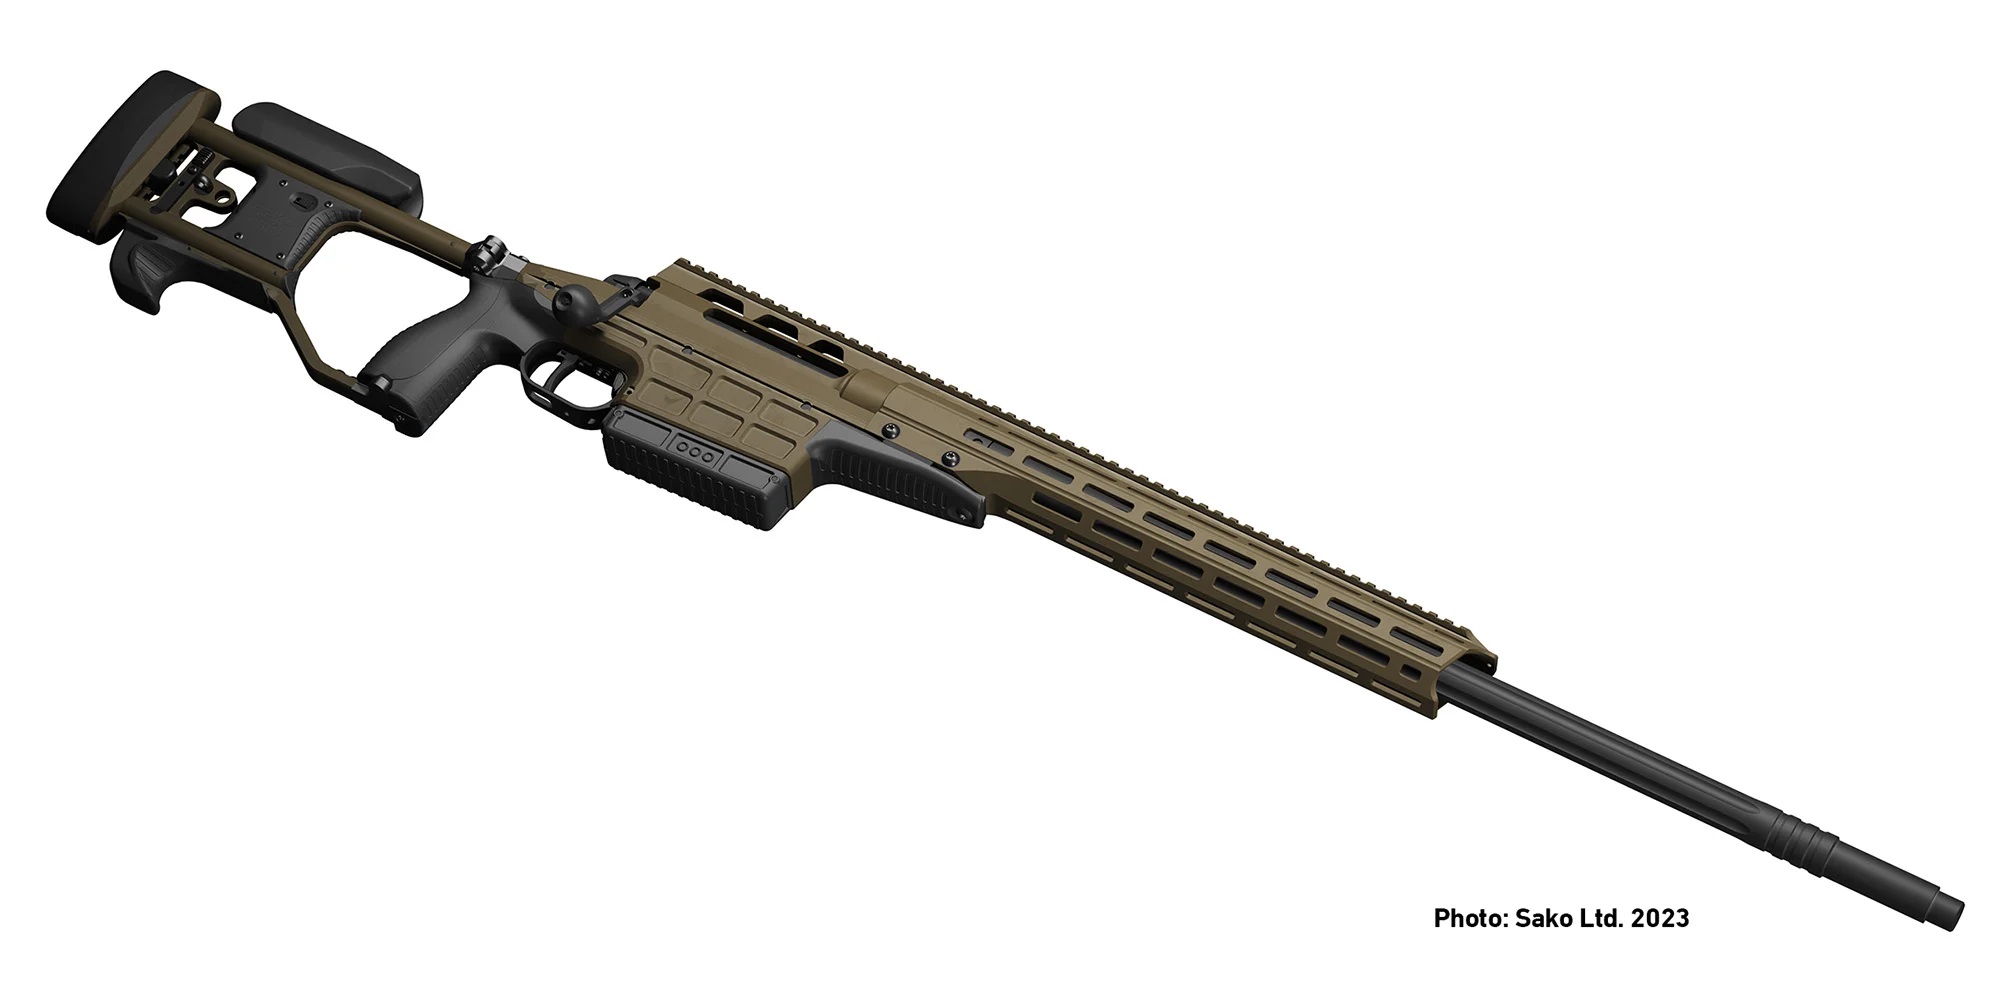  瑞典公布未來將採購的TRG M10狙擊槍